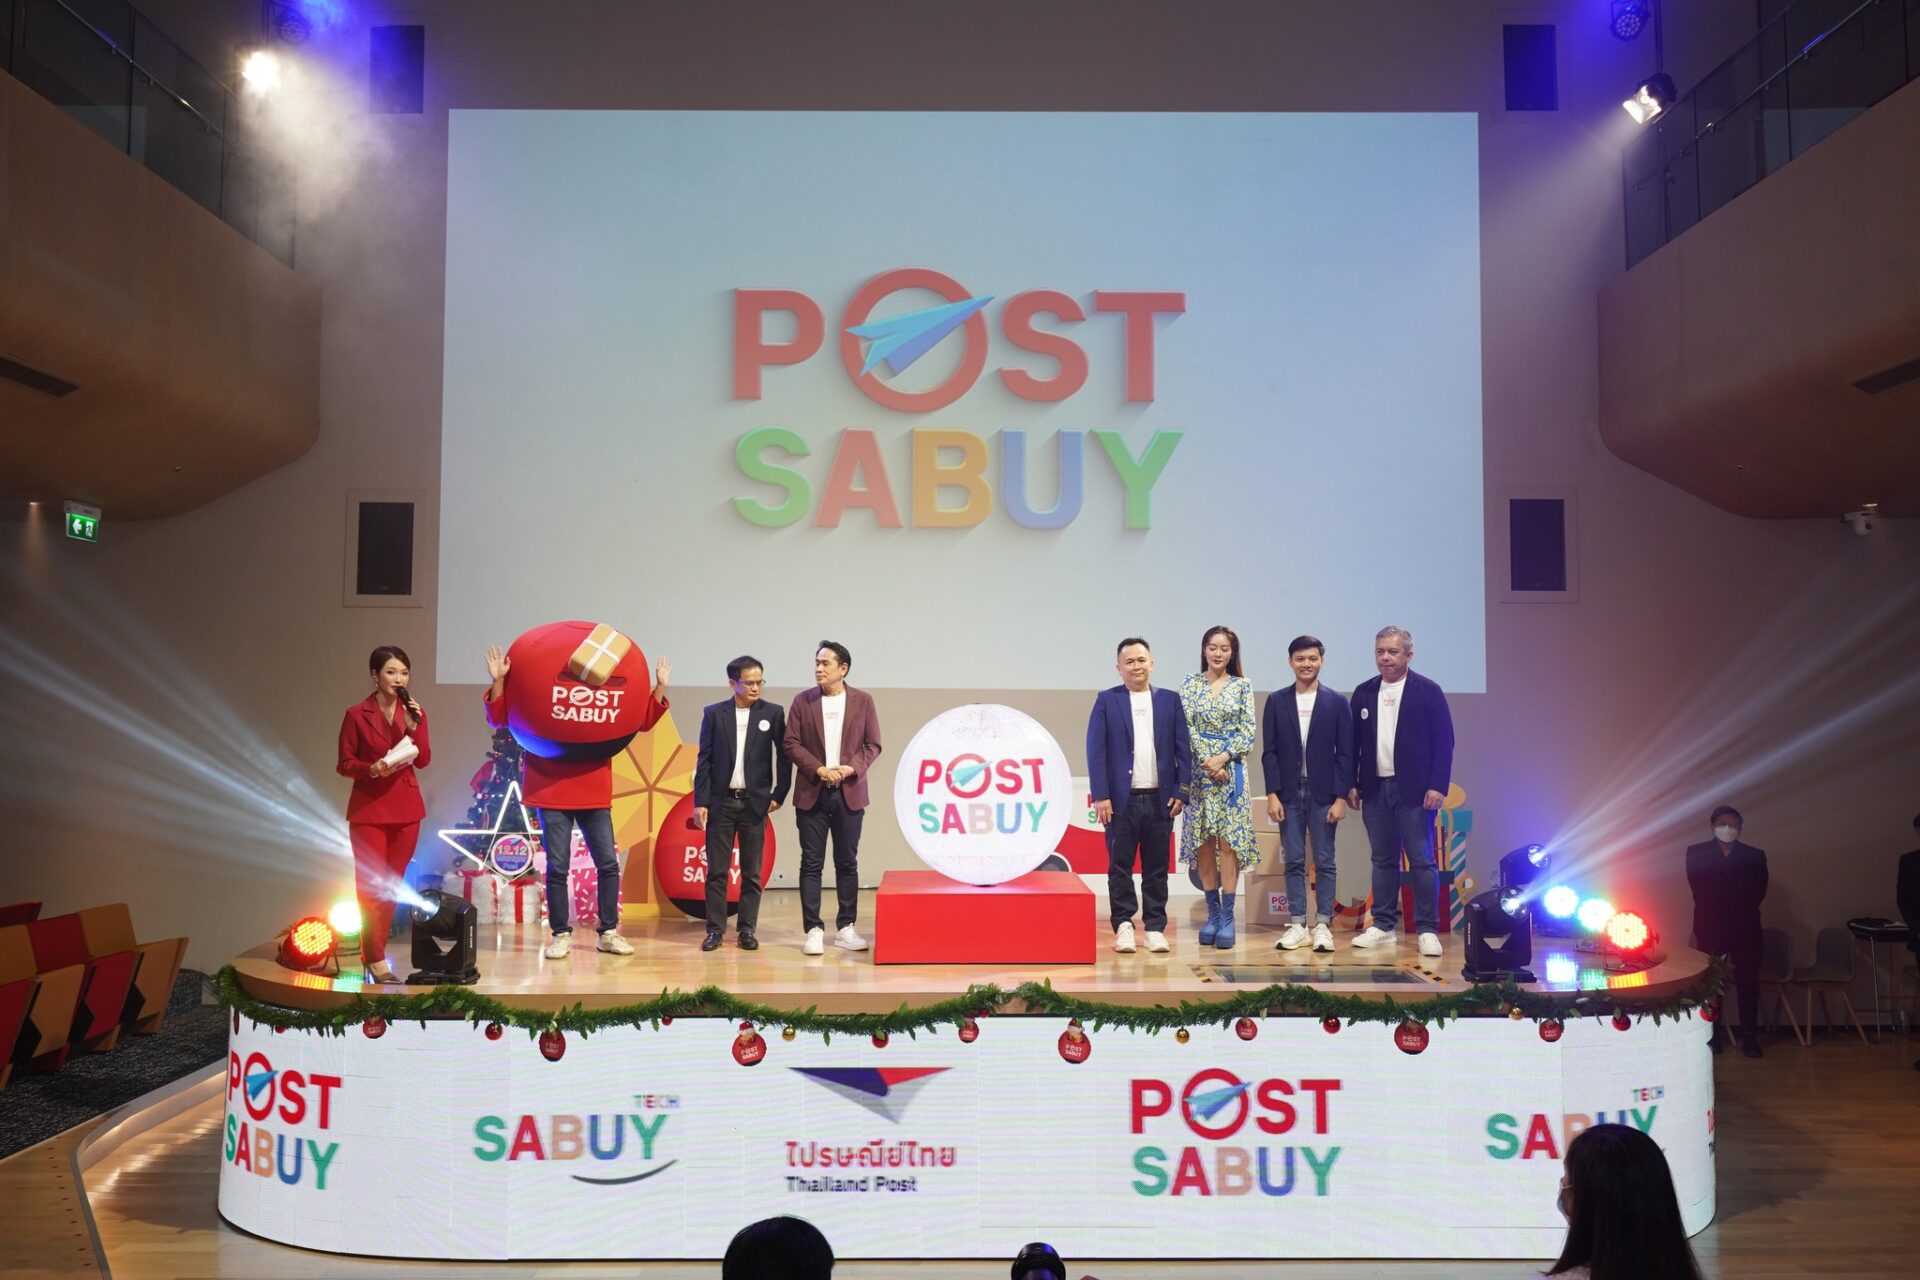 SABUY จับมือ ไปรษณีย์ไทย คลอดขนส่งน้องใหม่ “POST SABUY”  เขย่าตลาดอีคอมเมิร์ซ เพิ่มช่องทางรับ-ส่งพัสดุ